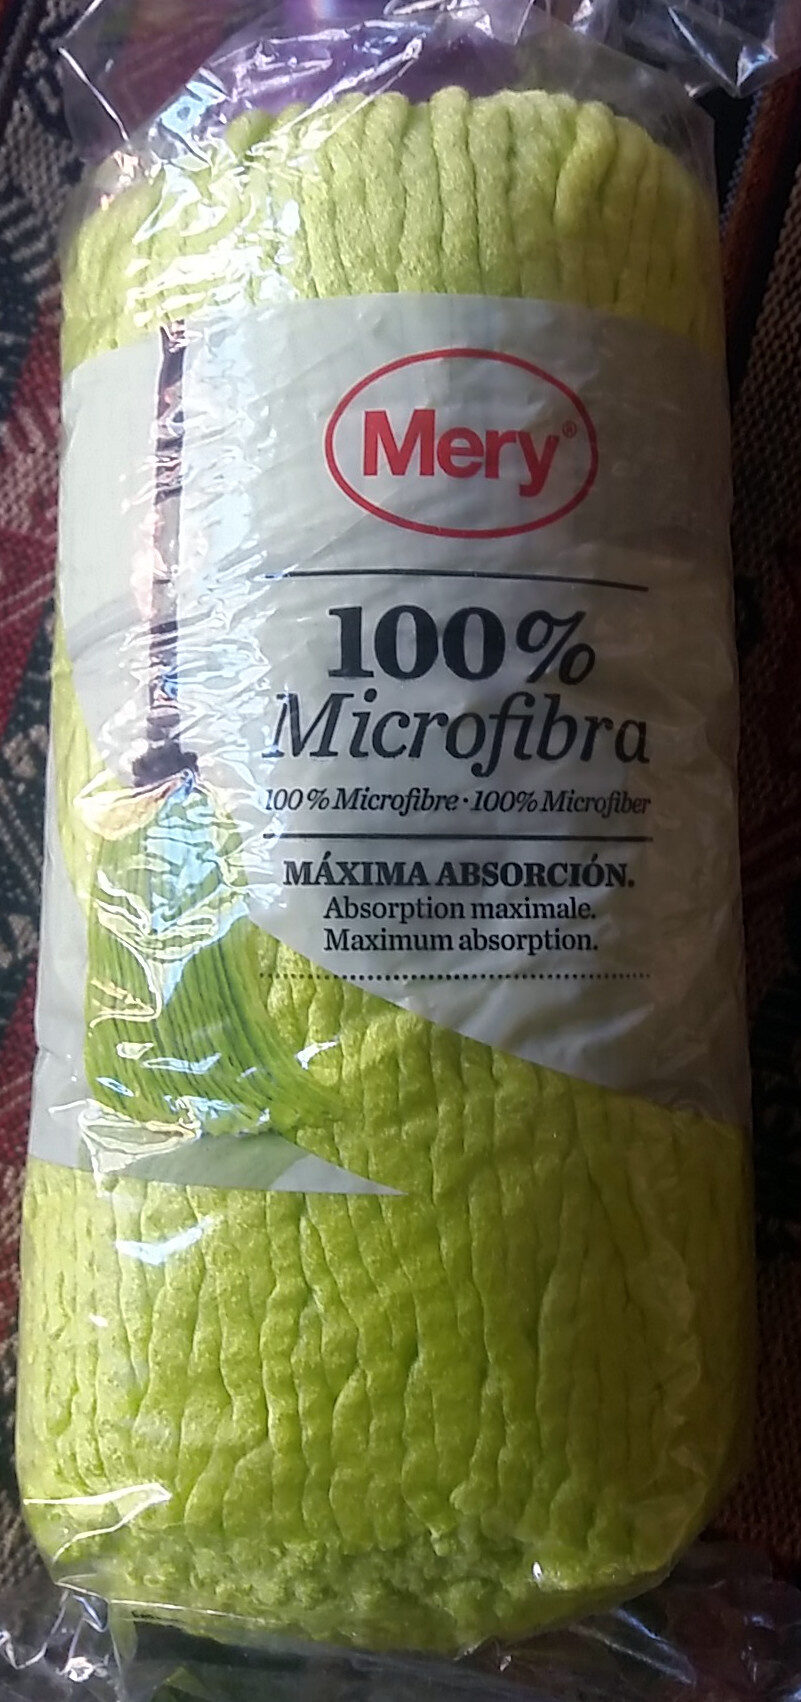 Cabeza de Fregona 100% Microfibra - Produit - es